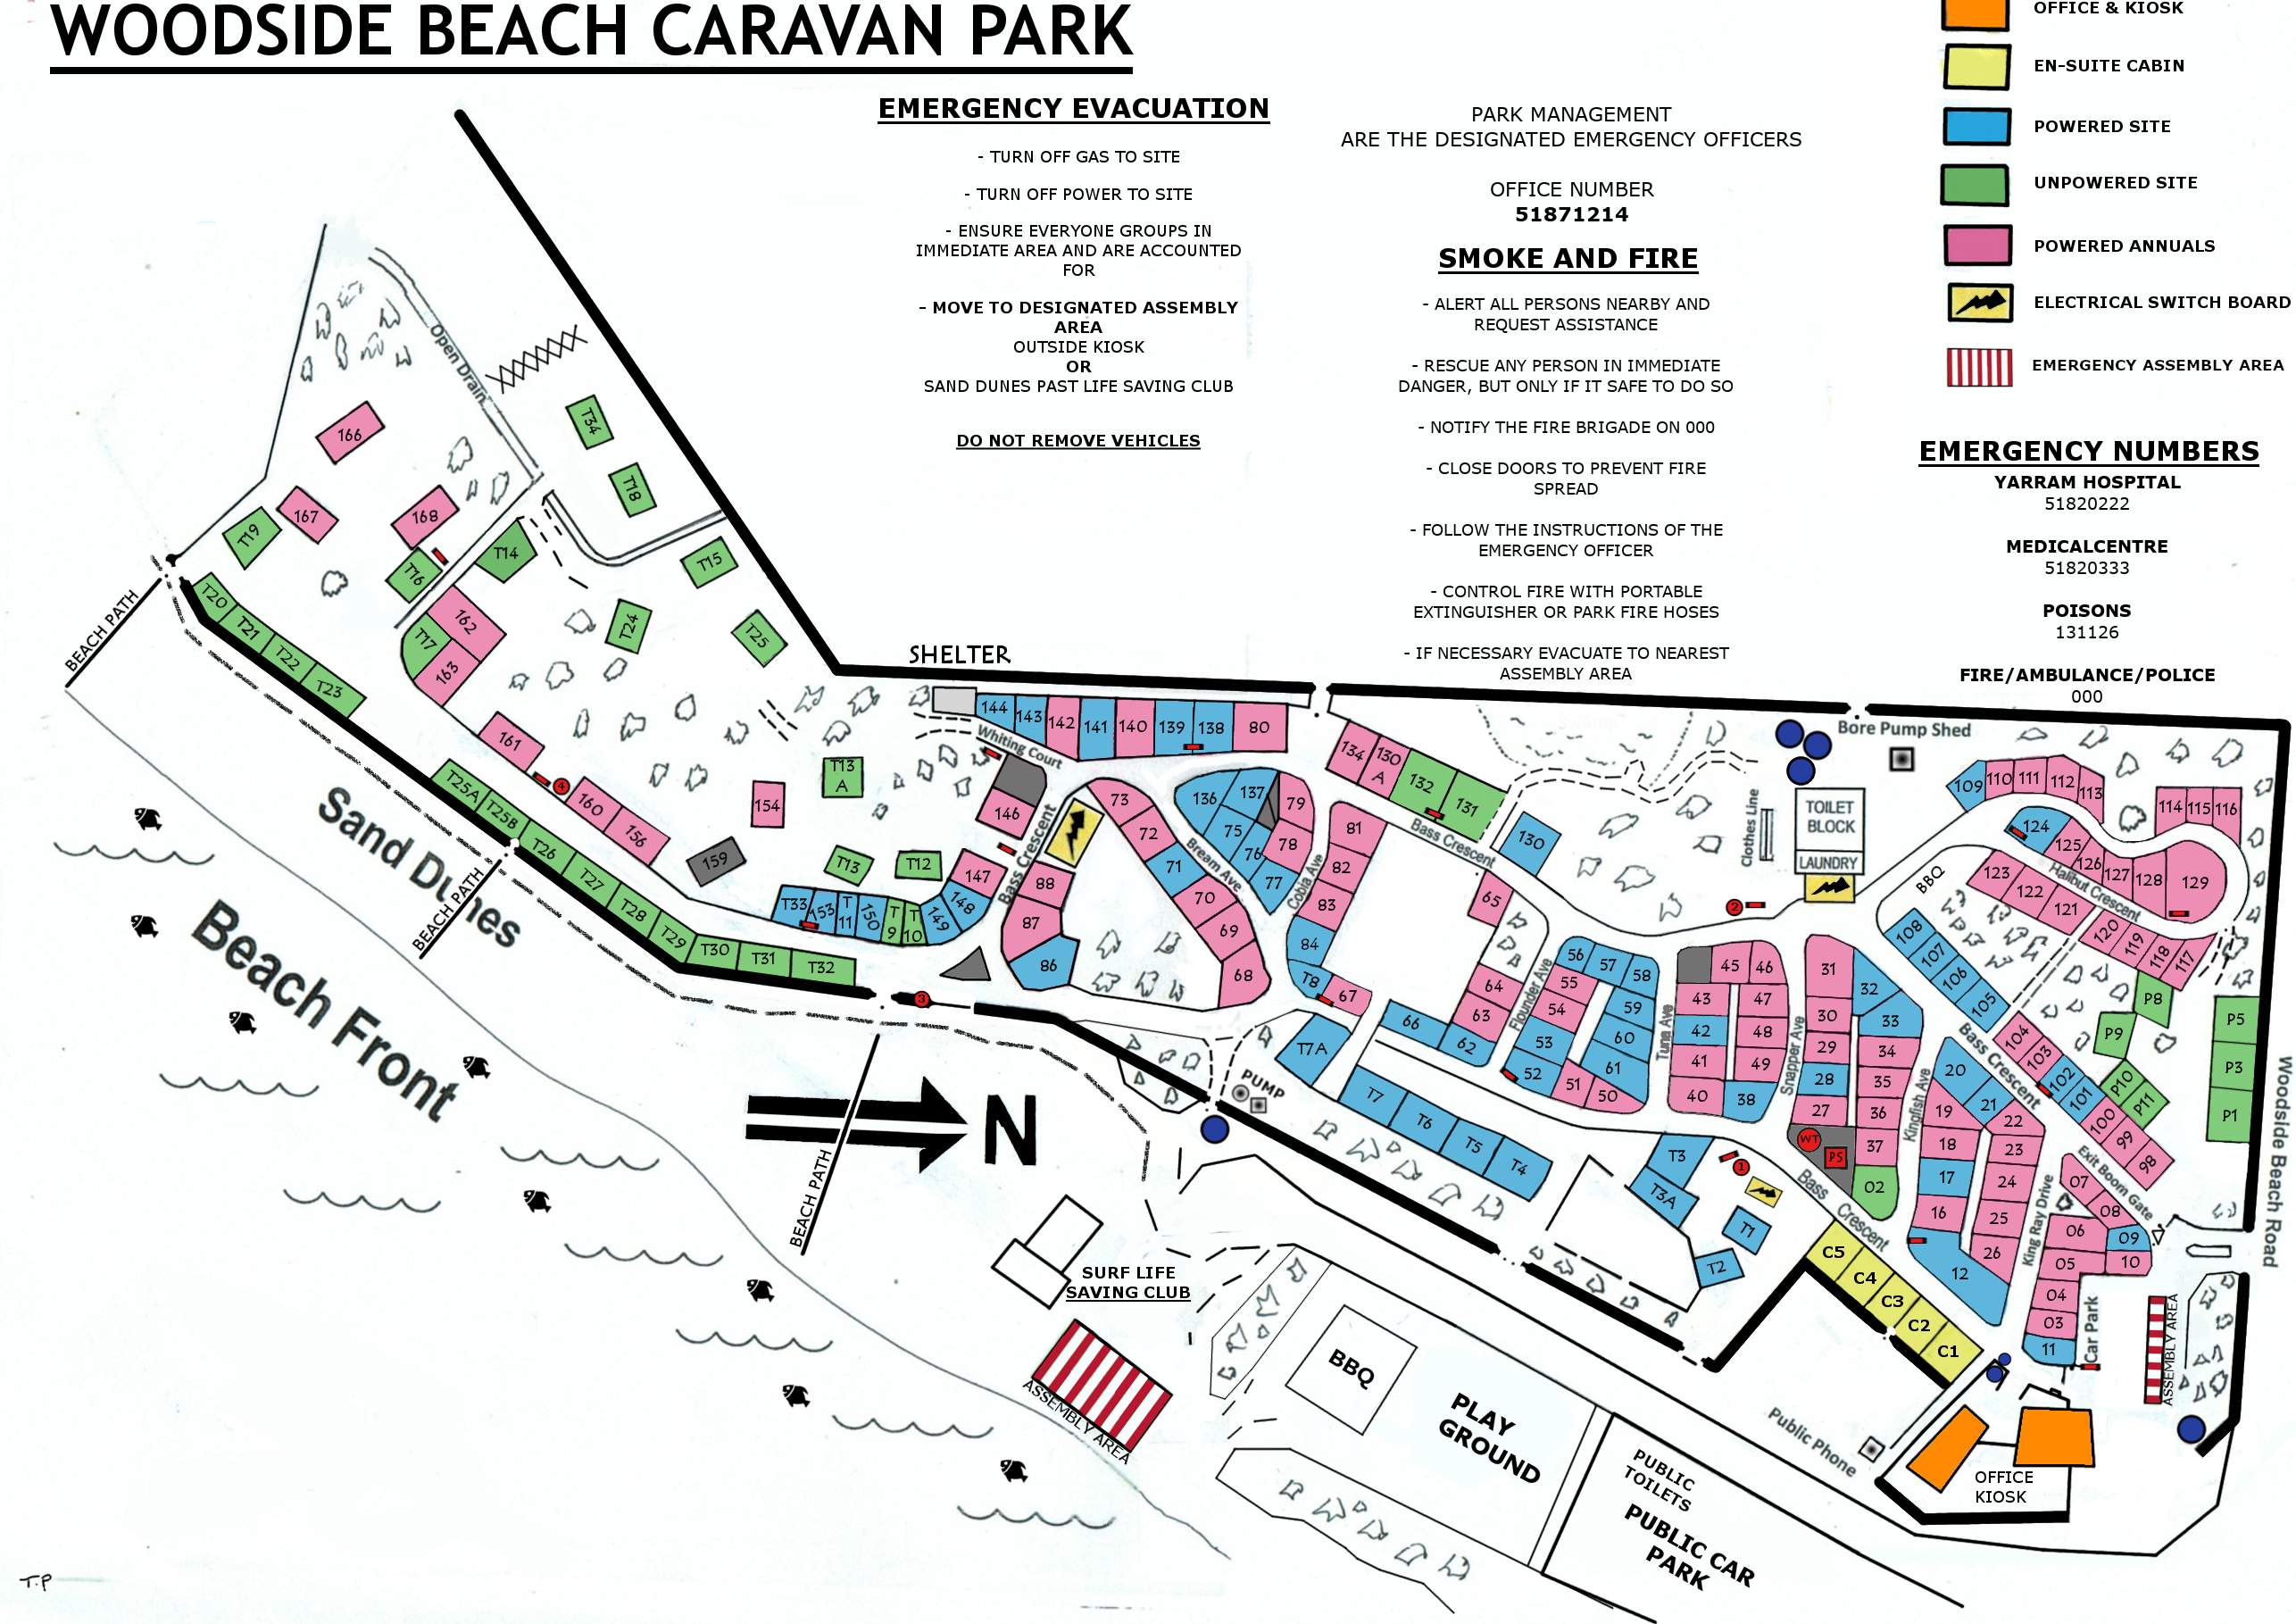 Woodside Beach Caravan Park